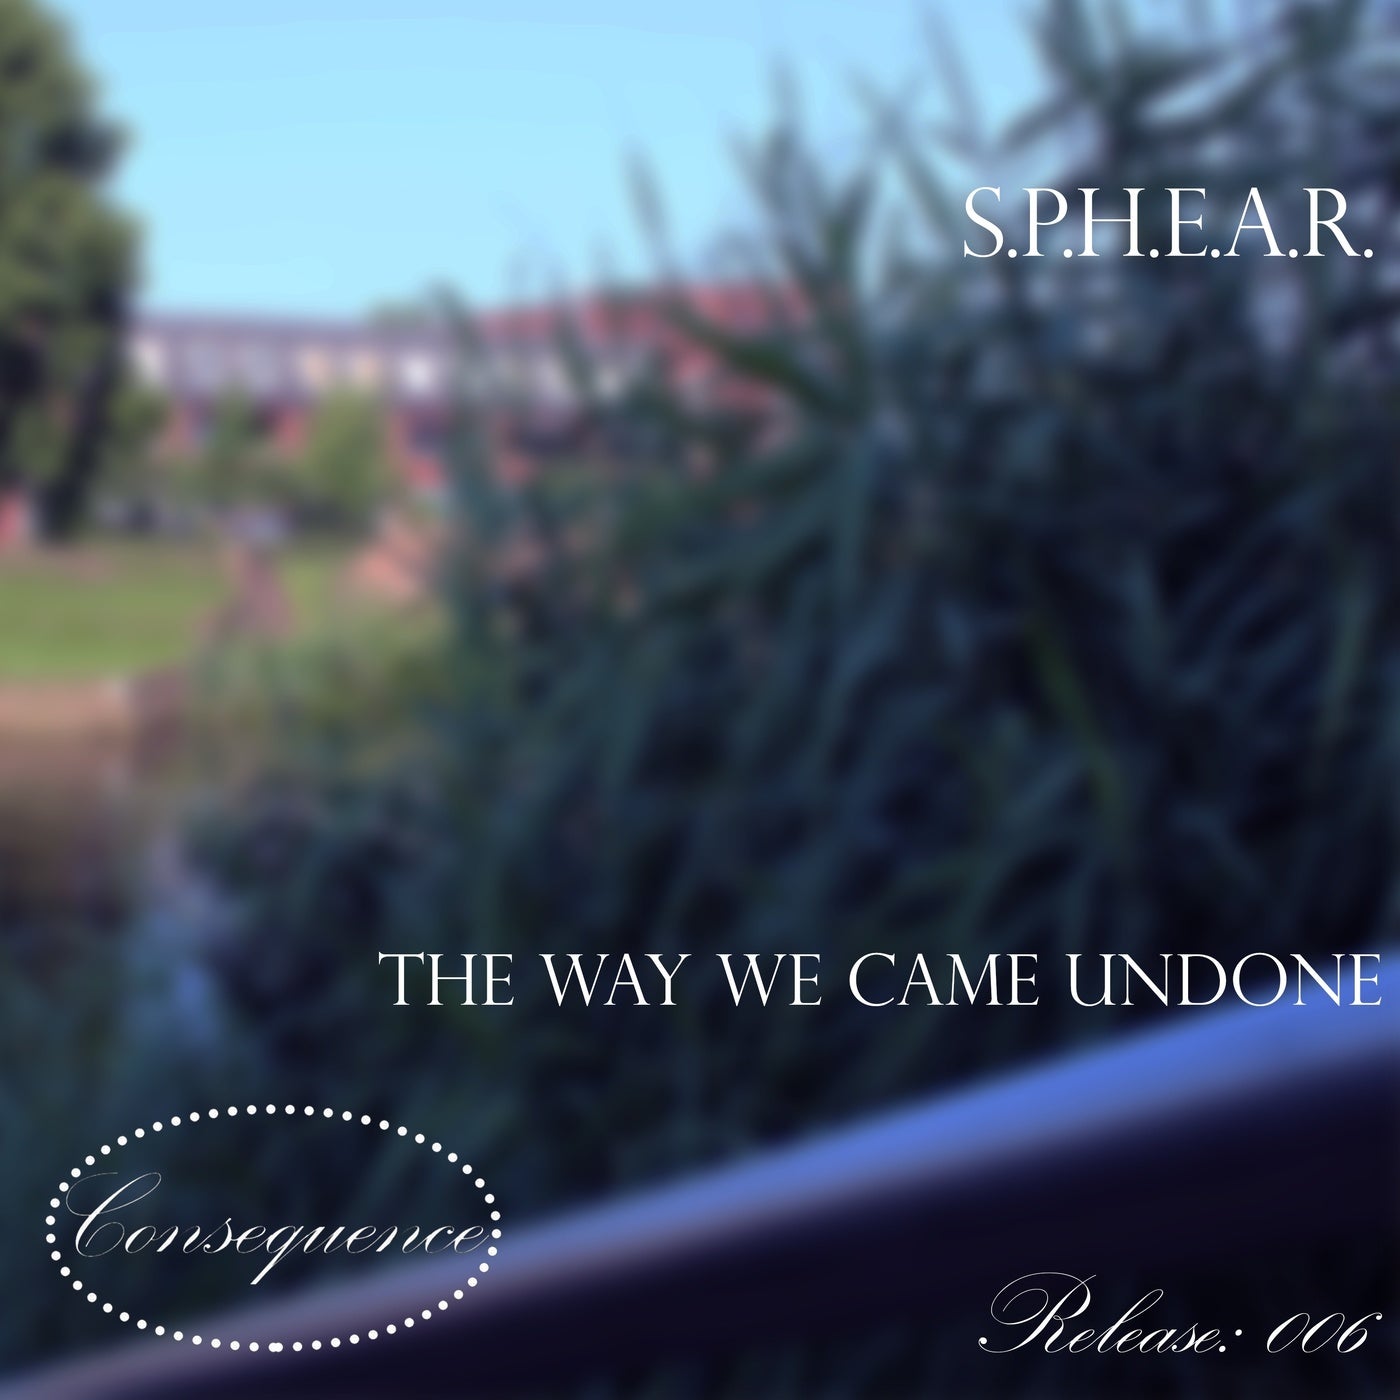 S.P.H.E.A.R. - The Way We Came Undone (Original Mix)